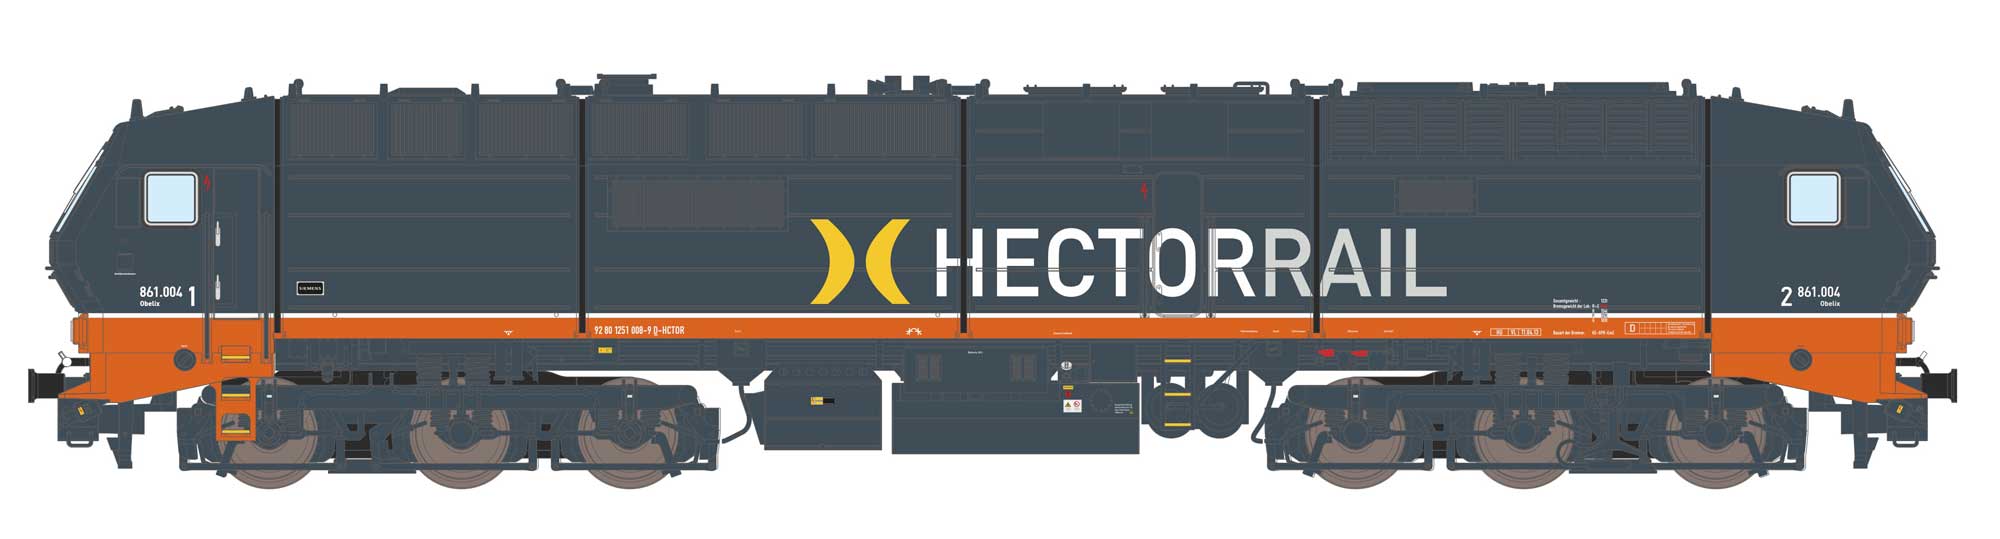 80001: DE2700 Hectorrail (DC version)